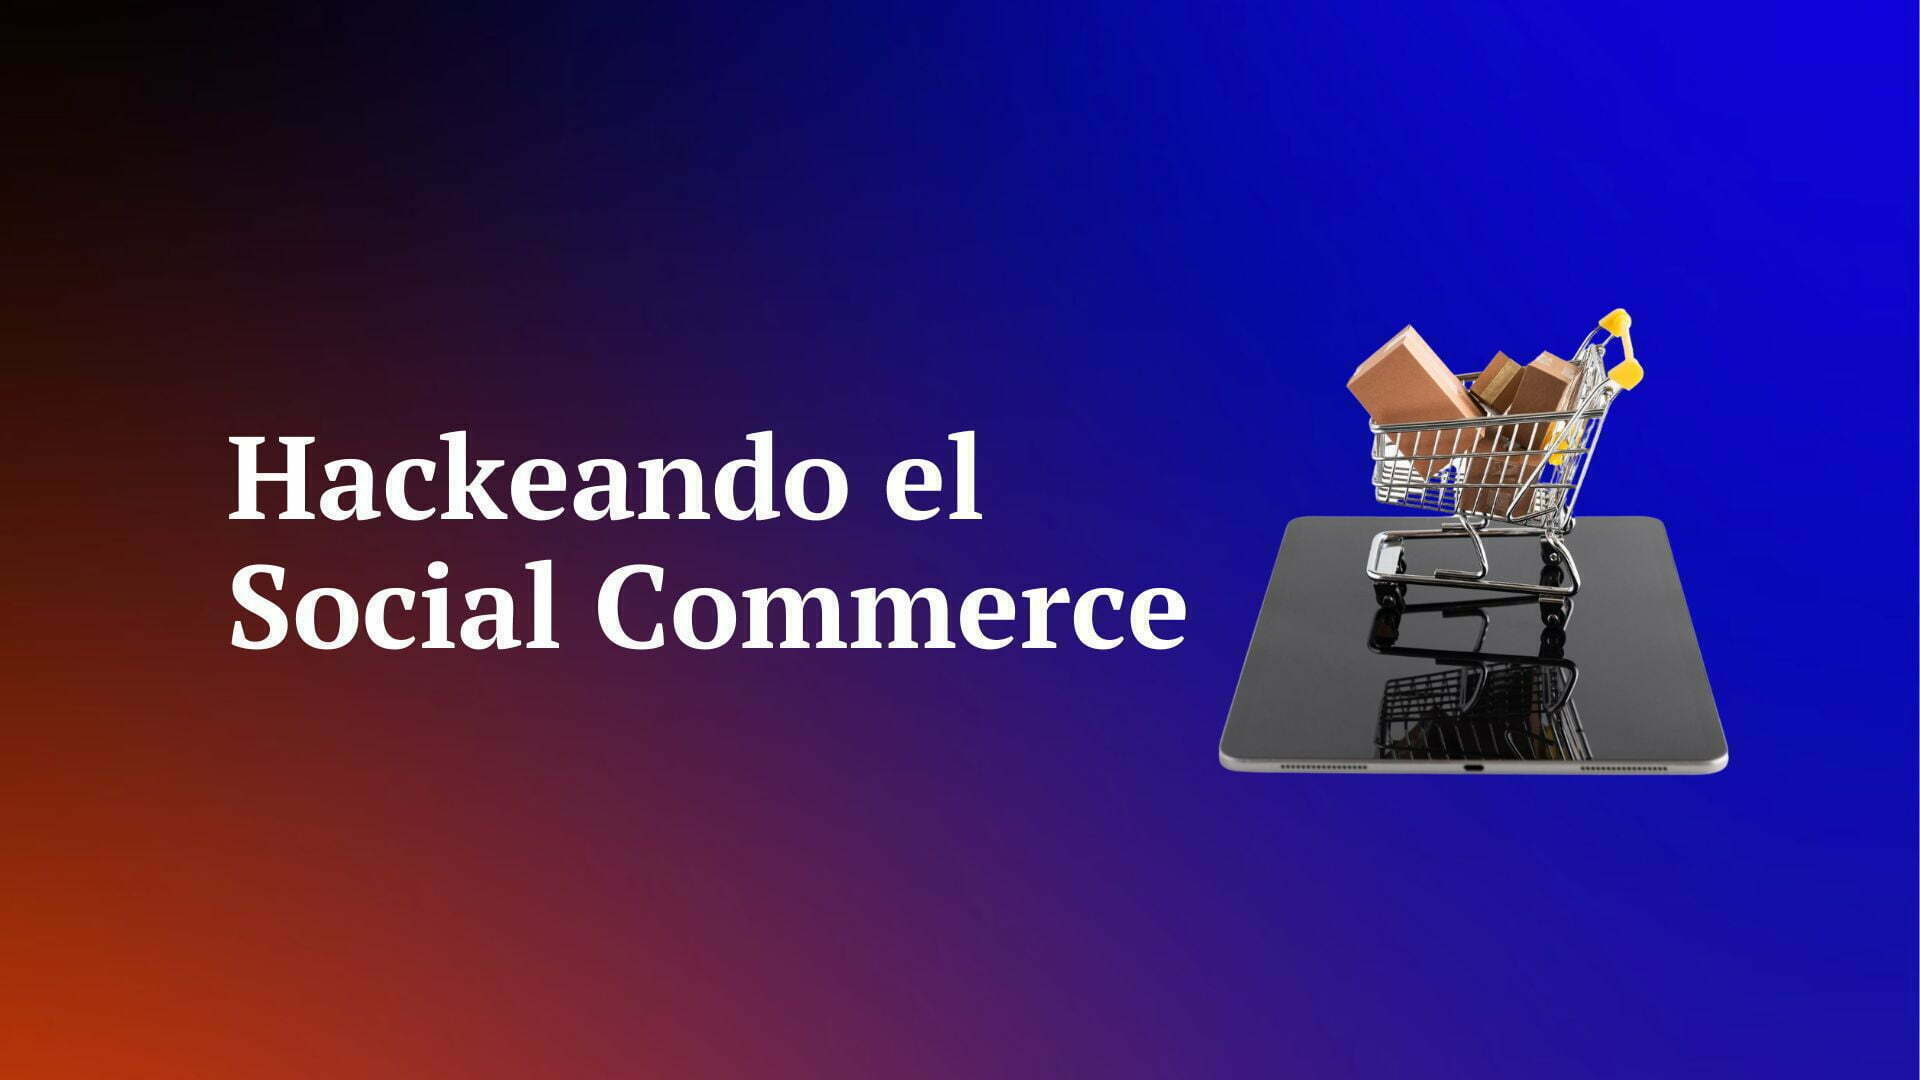 Hackeando Social Commerce